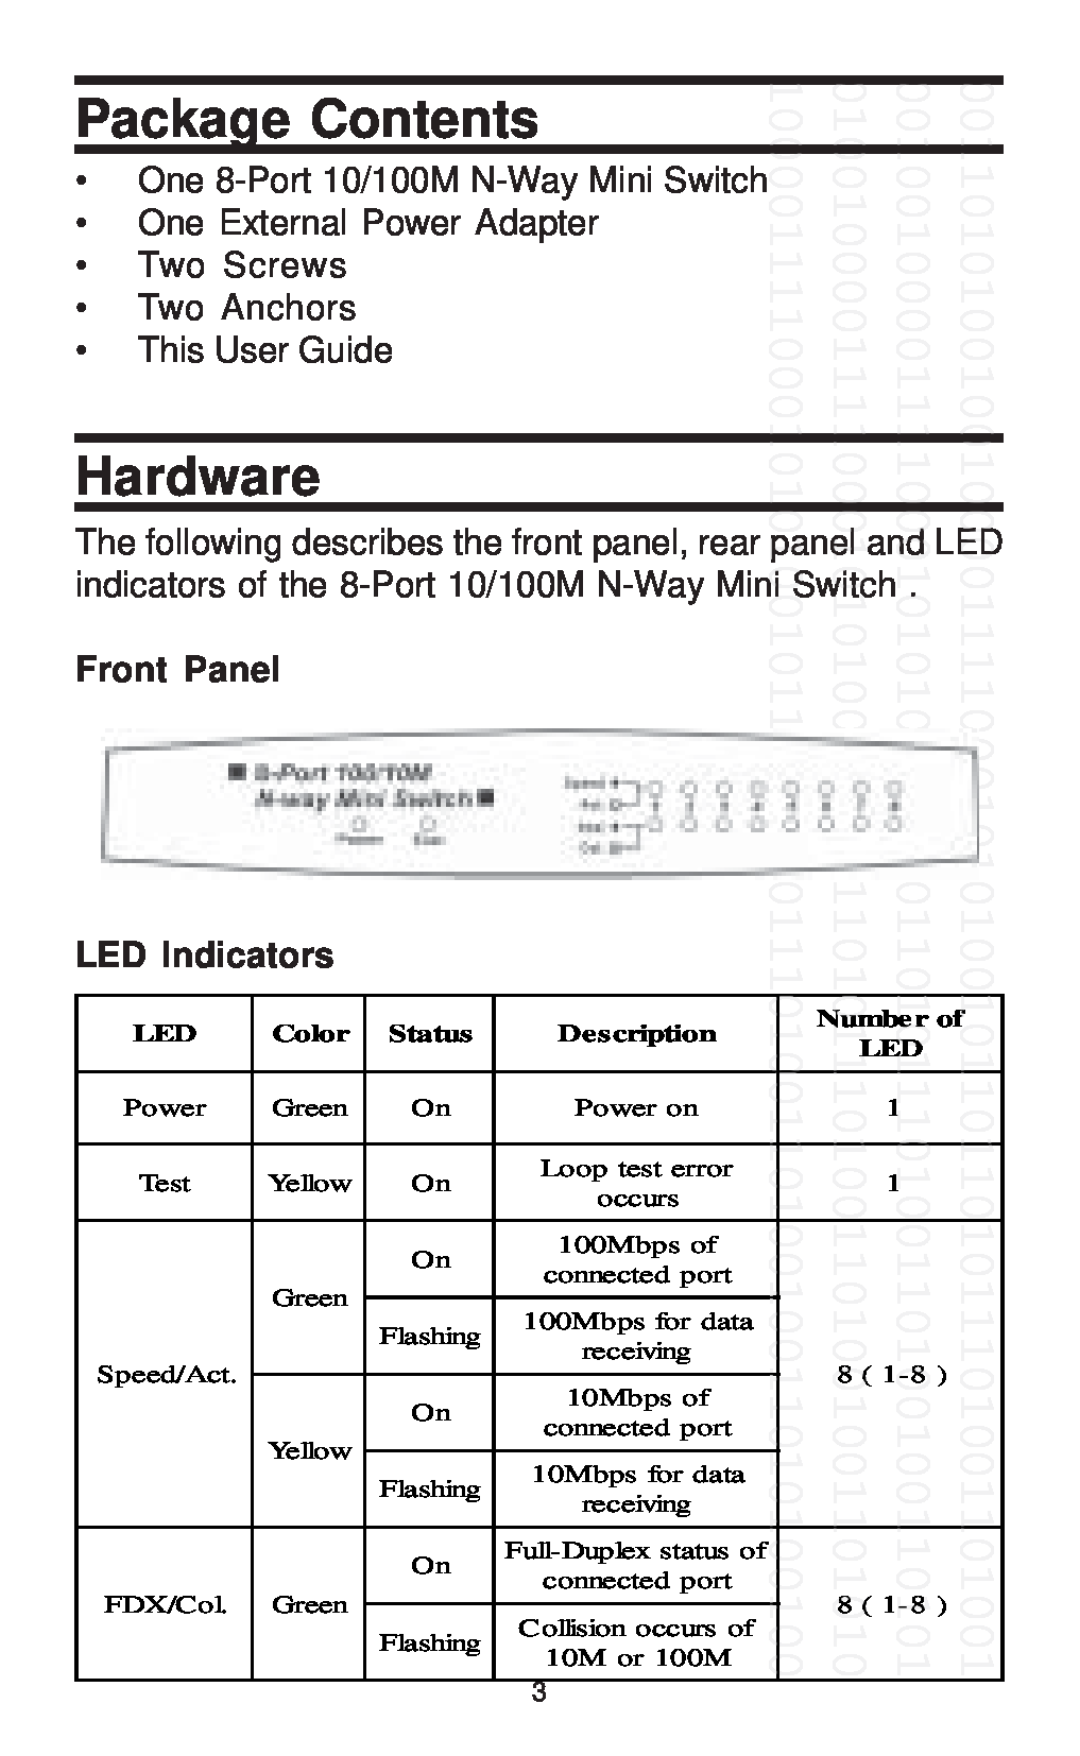 Farallon Communications 8-Port 10/100M Package Contents, Hardware, Front Panel LED Indicators, Color, Status, Description 